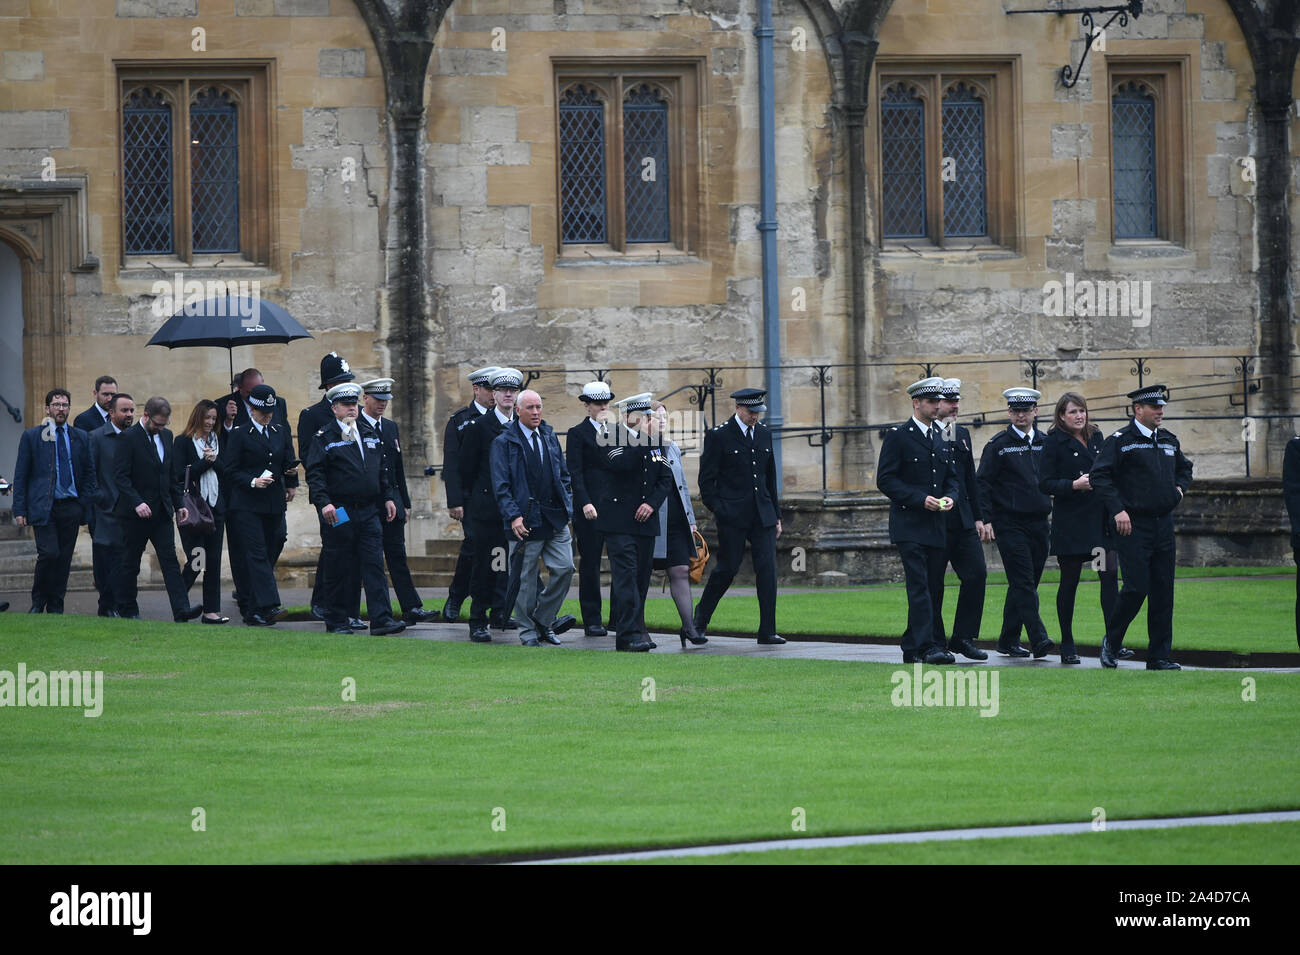 Trauernde kommen an der Christ Church Kathedrale in St. Aldate's, Oxford für das Begräbnis des PC Andrew Harper, der Thames Valley Police Officer, die starben, während die Reaktion auf Berichte über einen Einbruch. Stockfoto